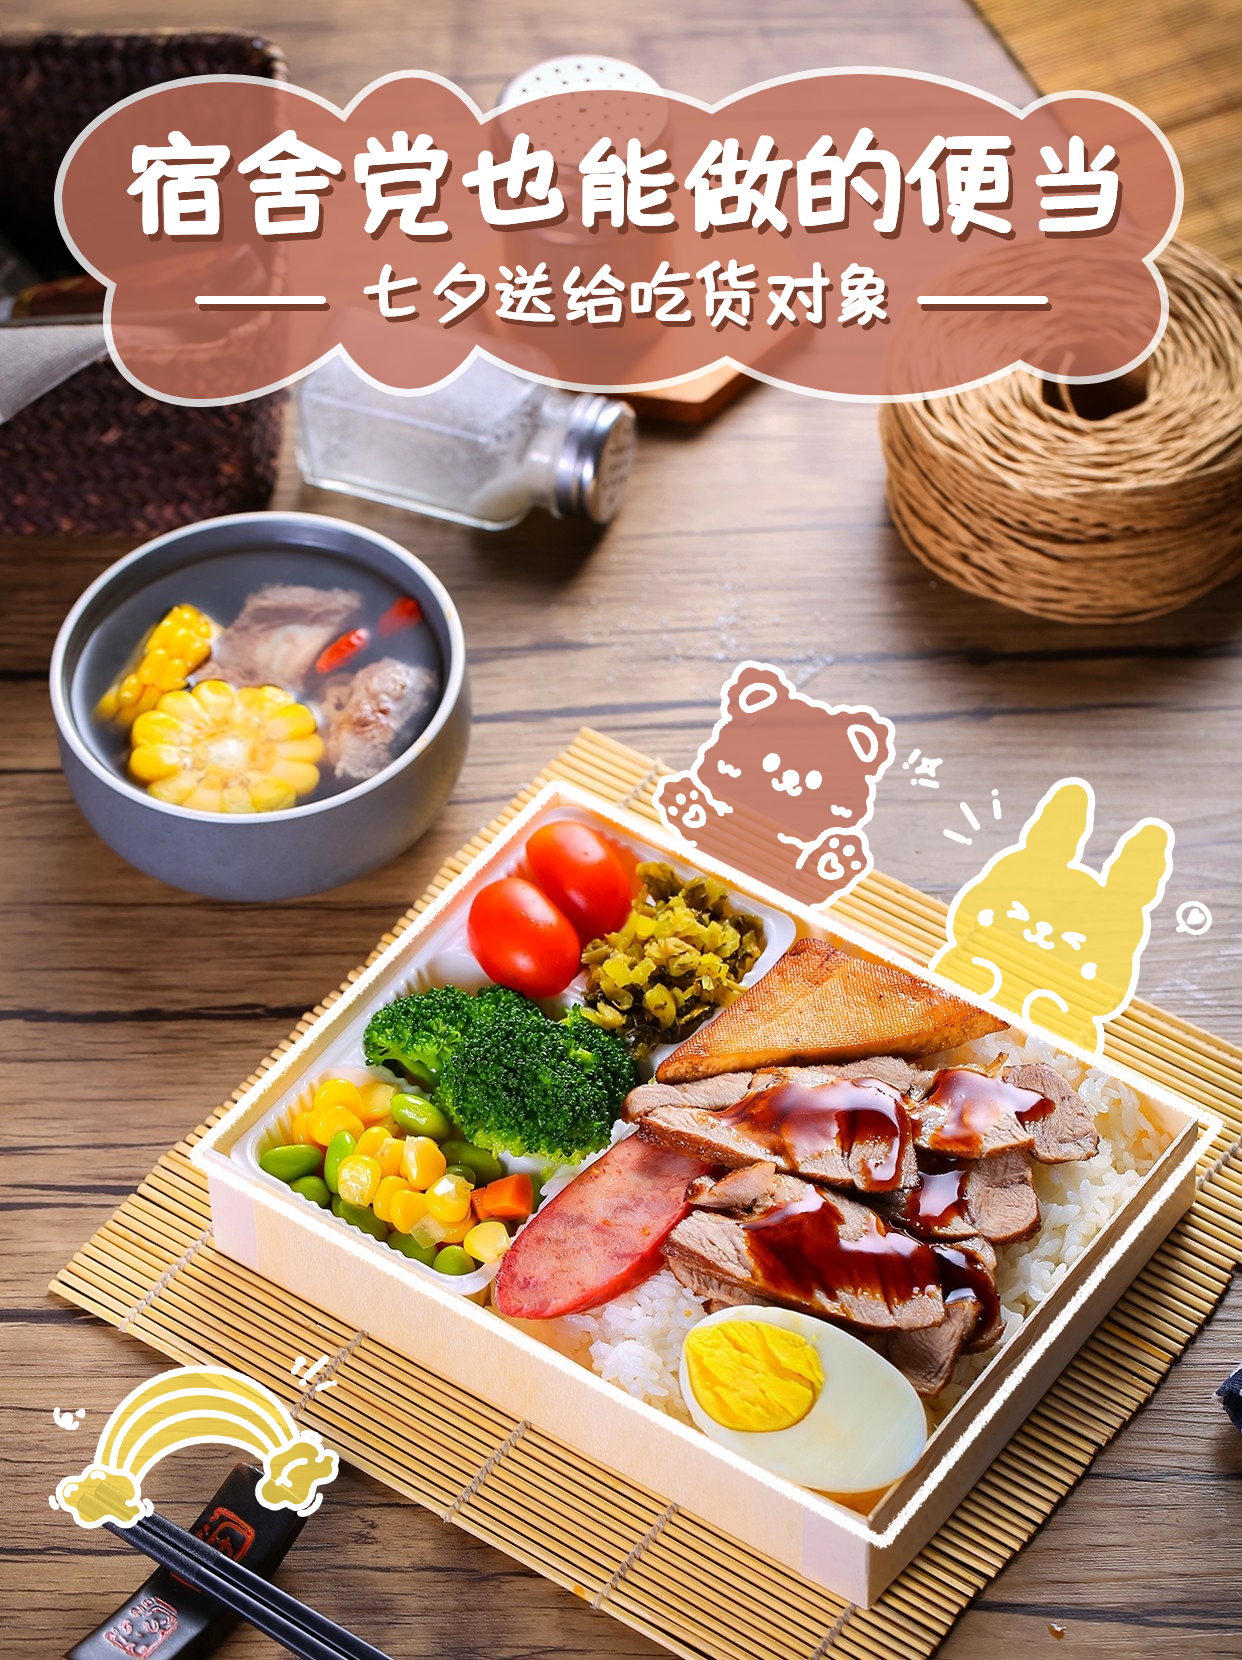 七夕餐饮美食节日营销实景海报